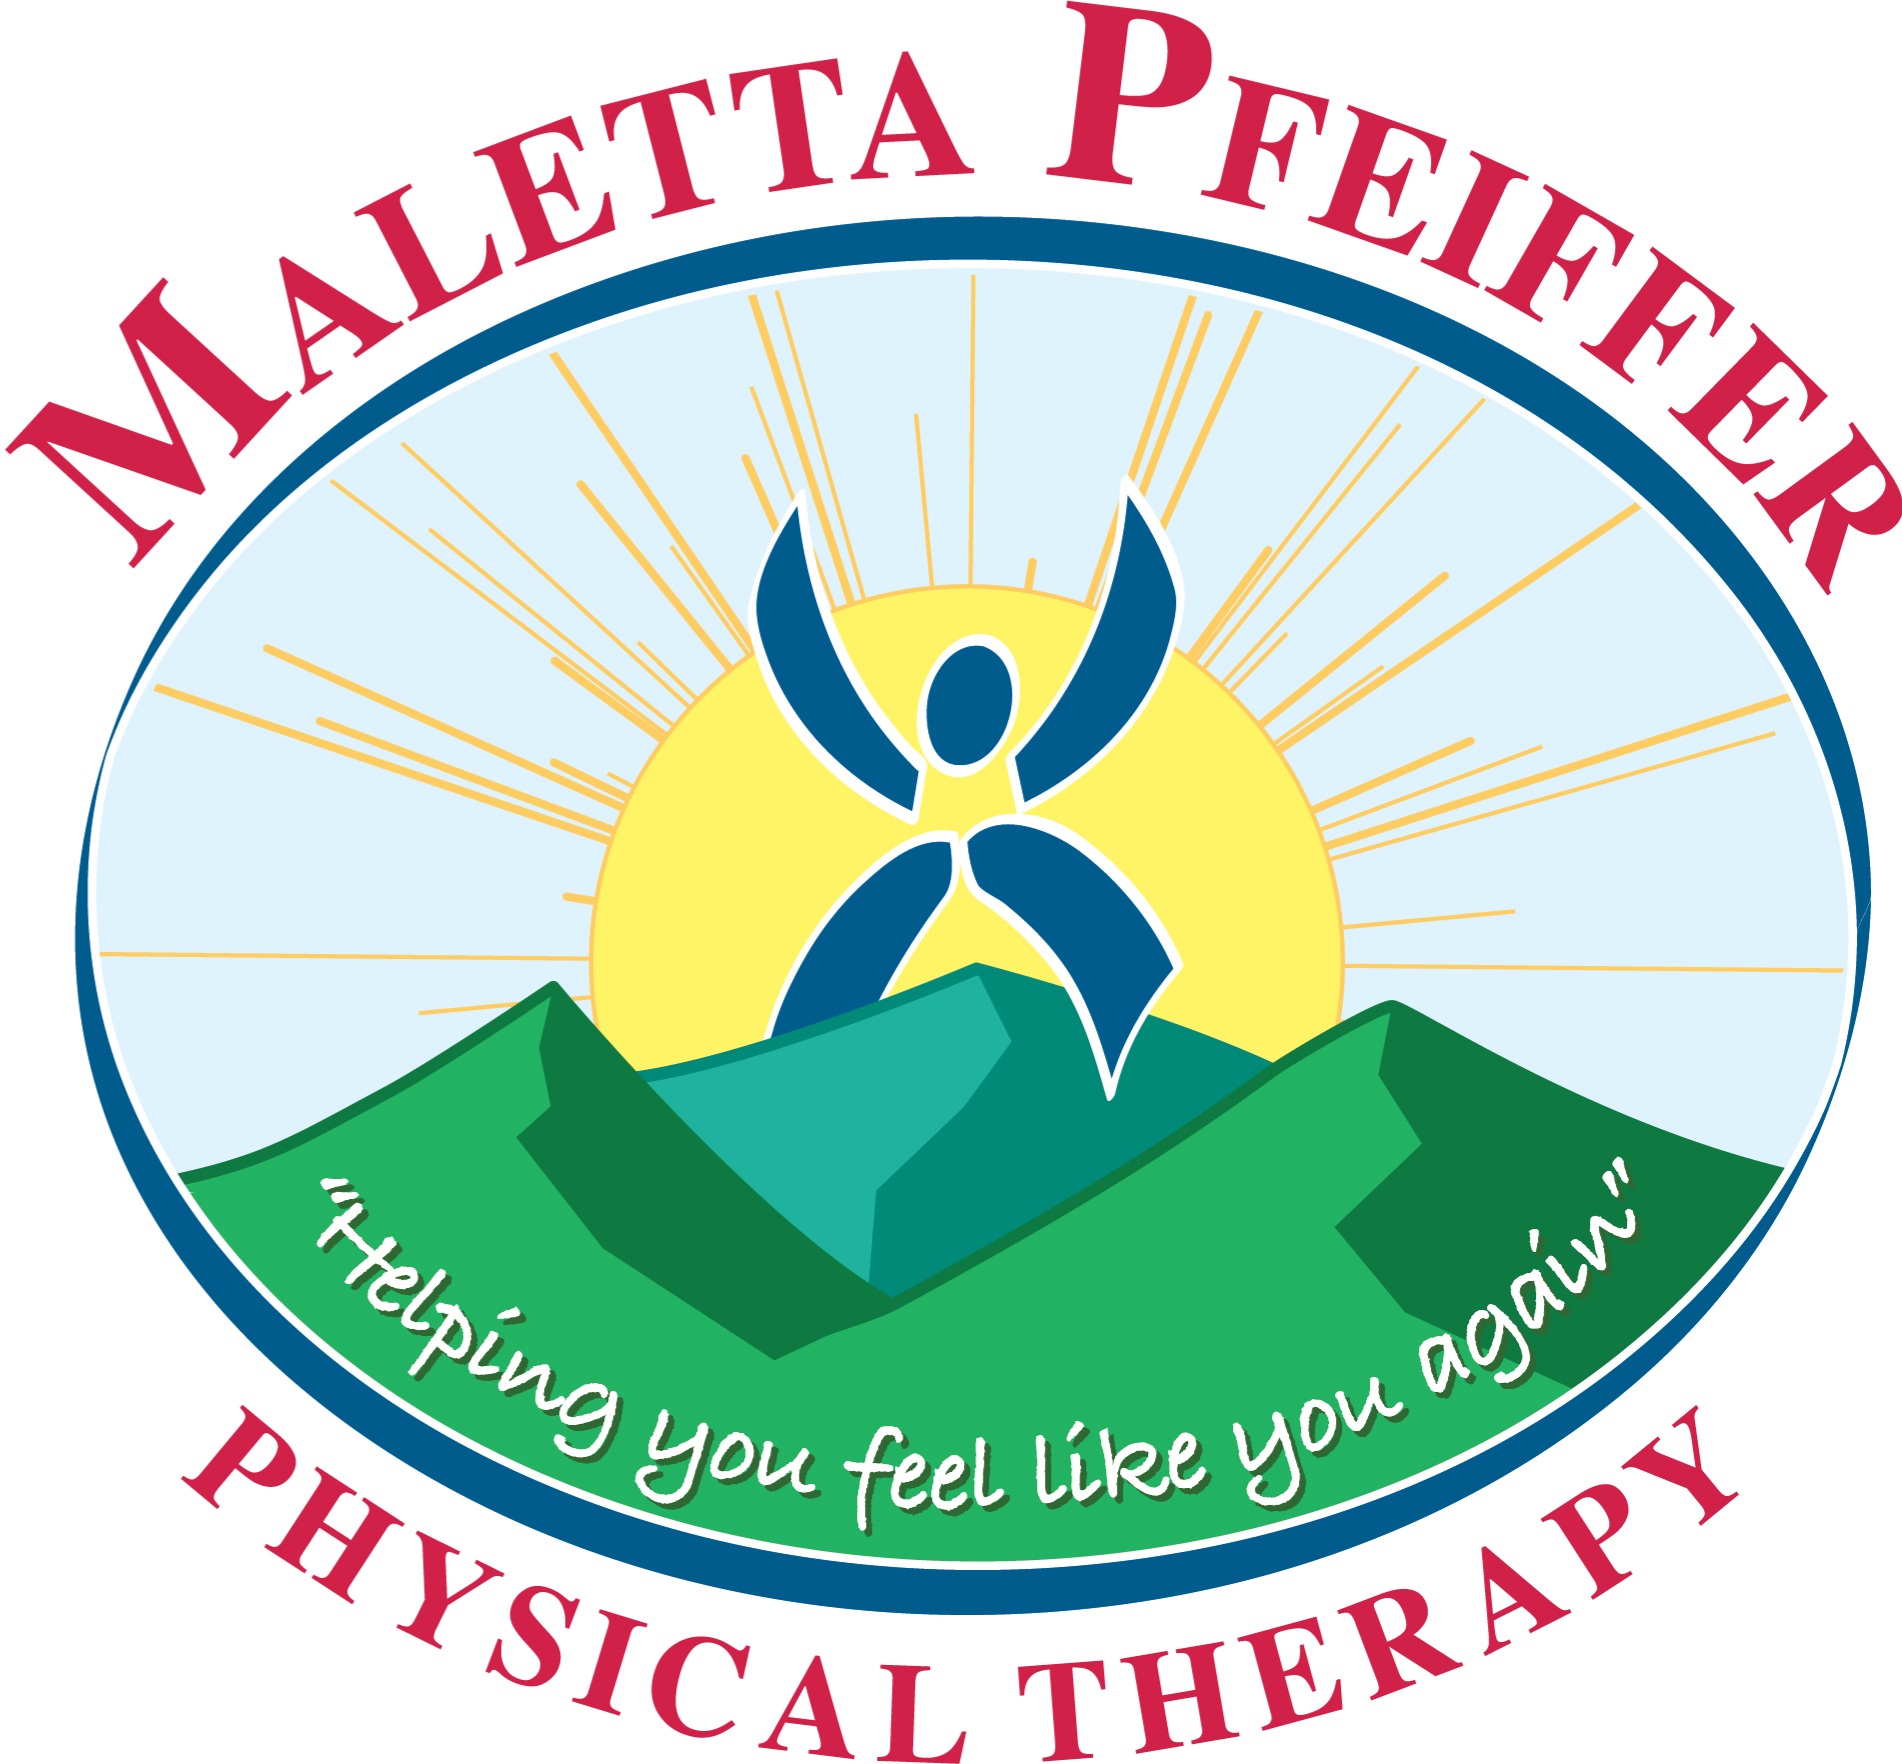 Maletta Pfeiffer & Associates